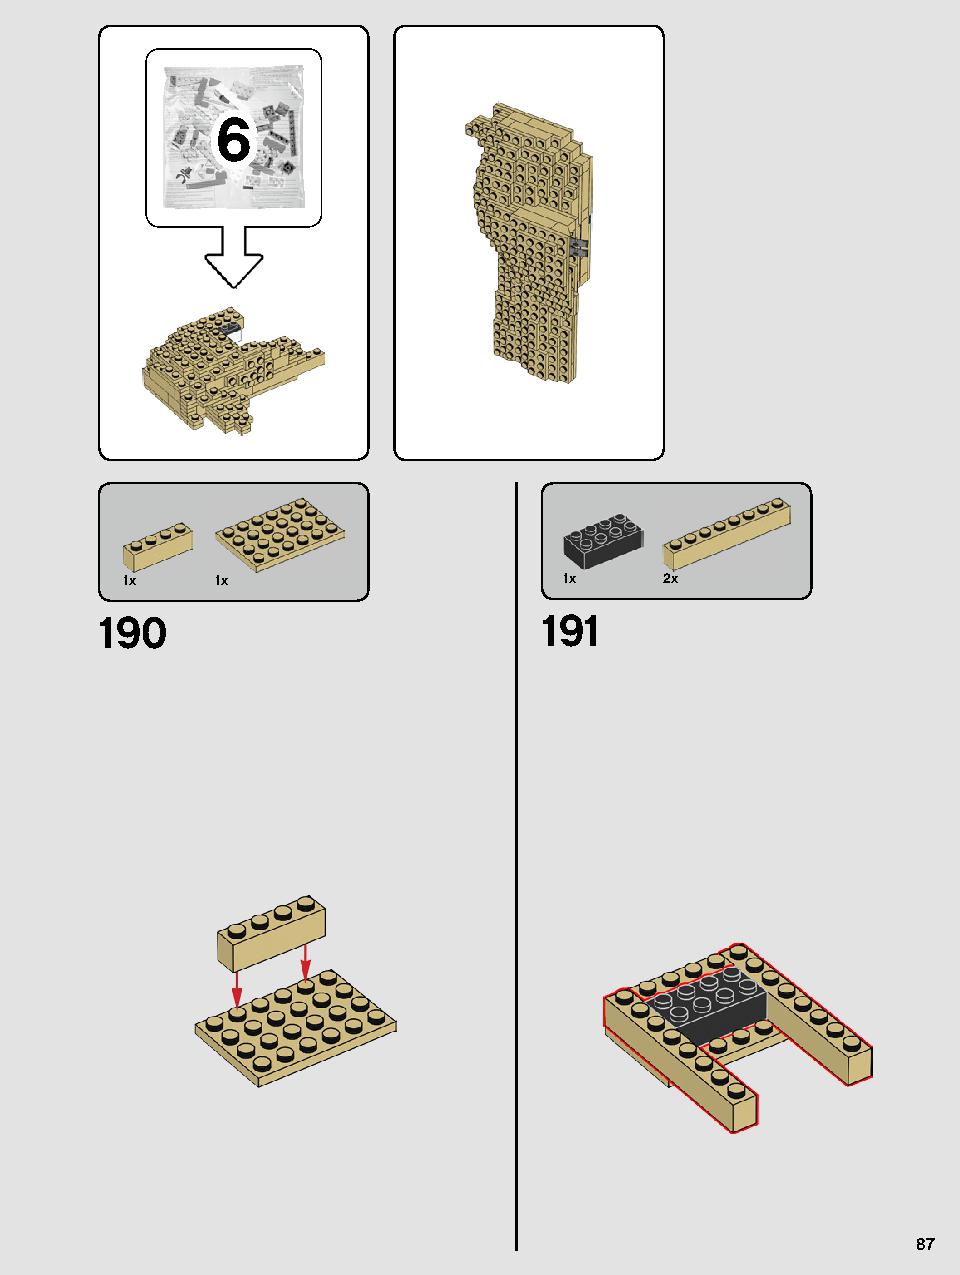 ヨーダ™ 75255 レゴの商品情報 レゴの説明書・組立方法 87 page